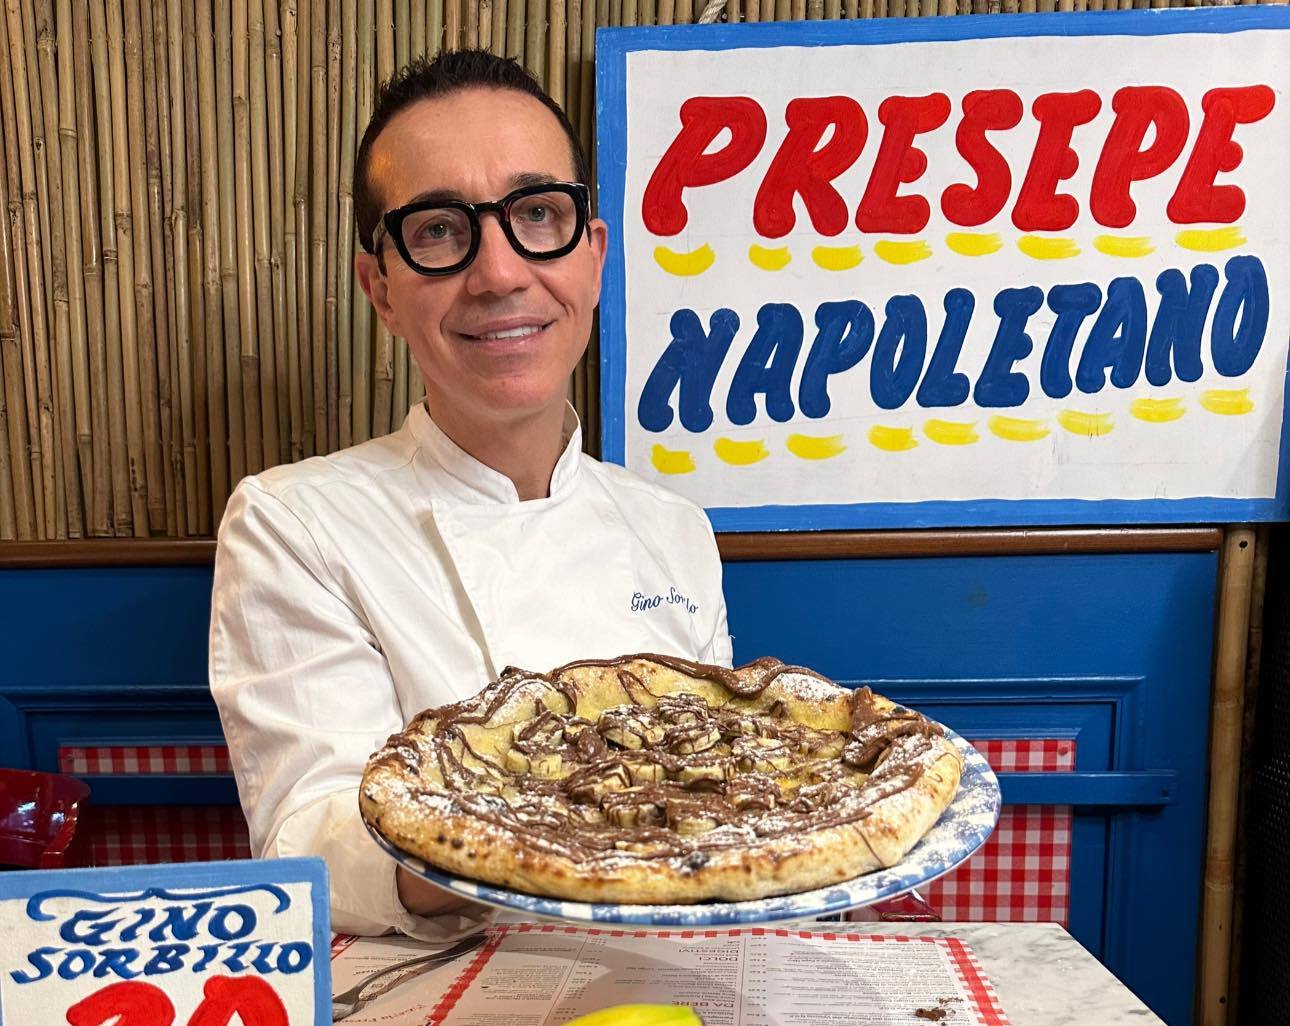 La nuova provocazione di Gino Sorbillo: ecco la pizza con nutella, banana e zucchero a velo